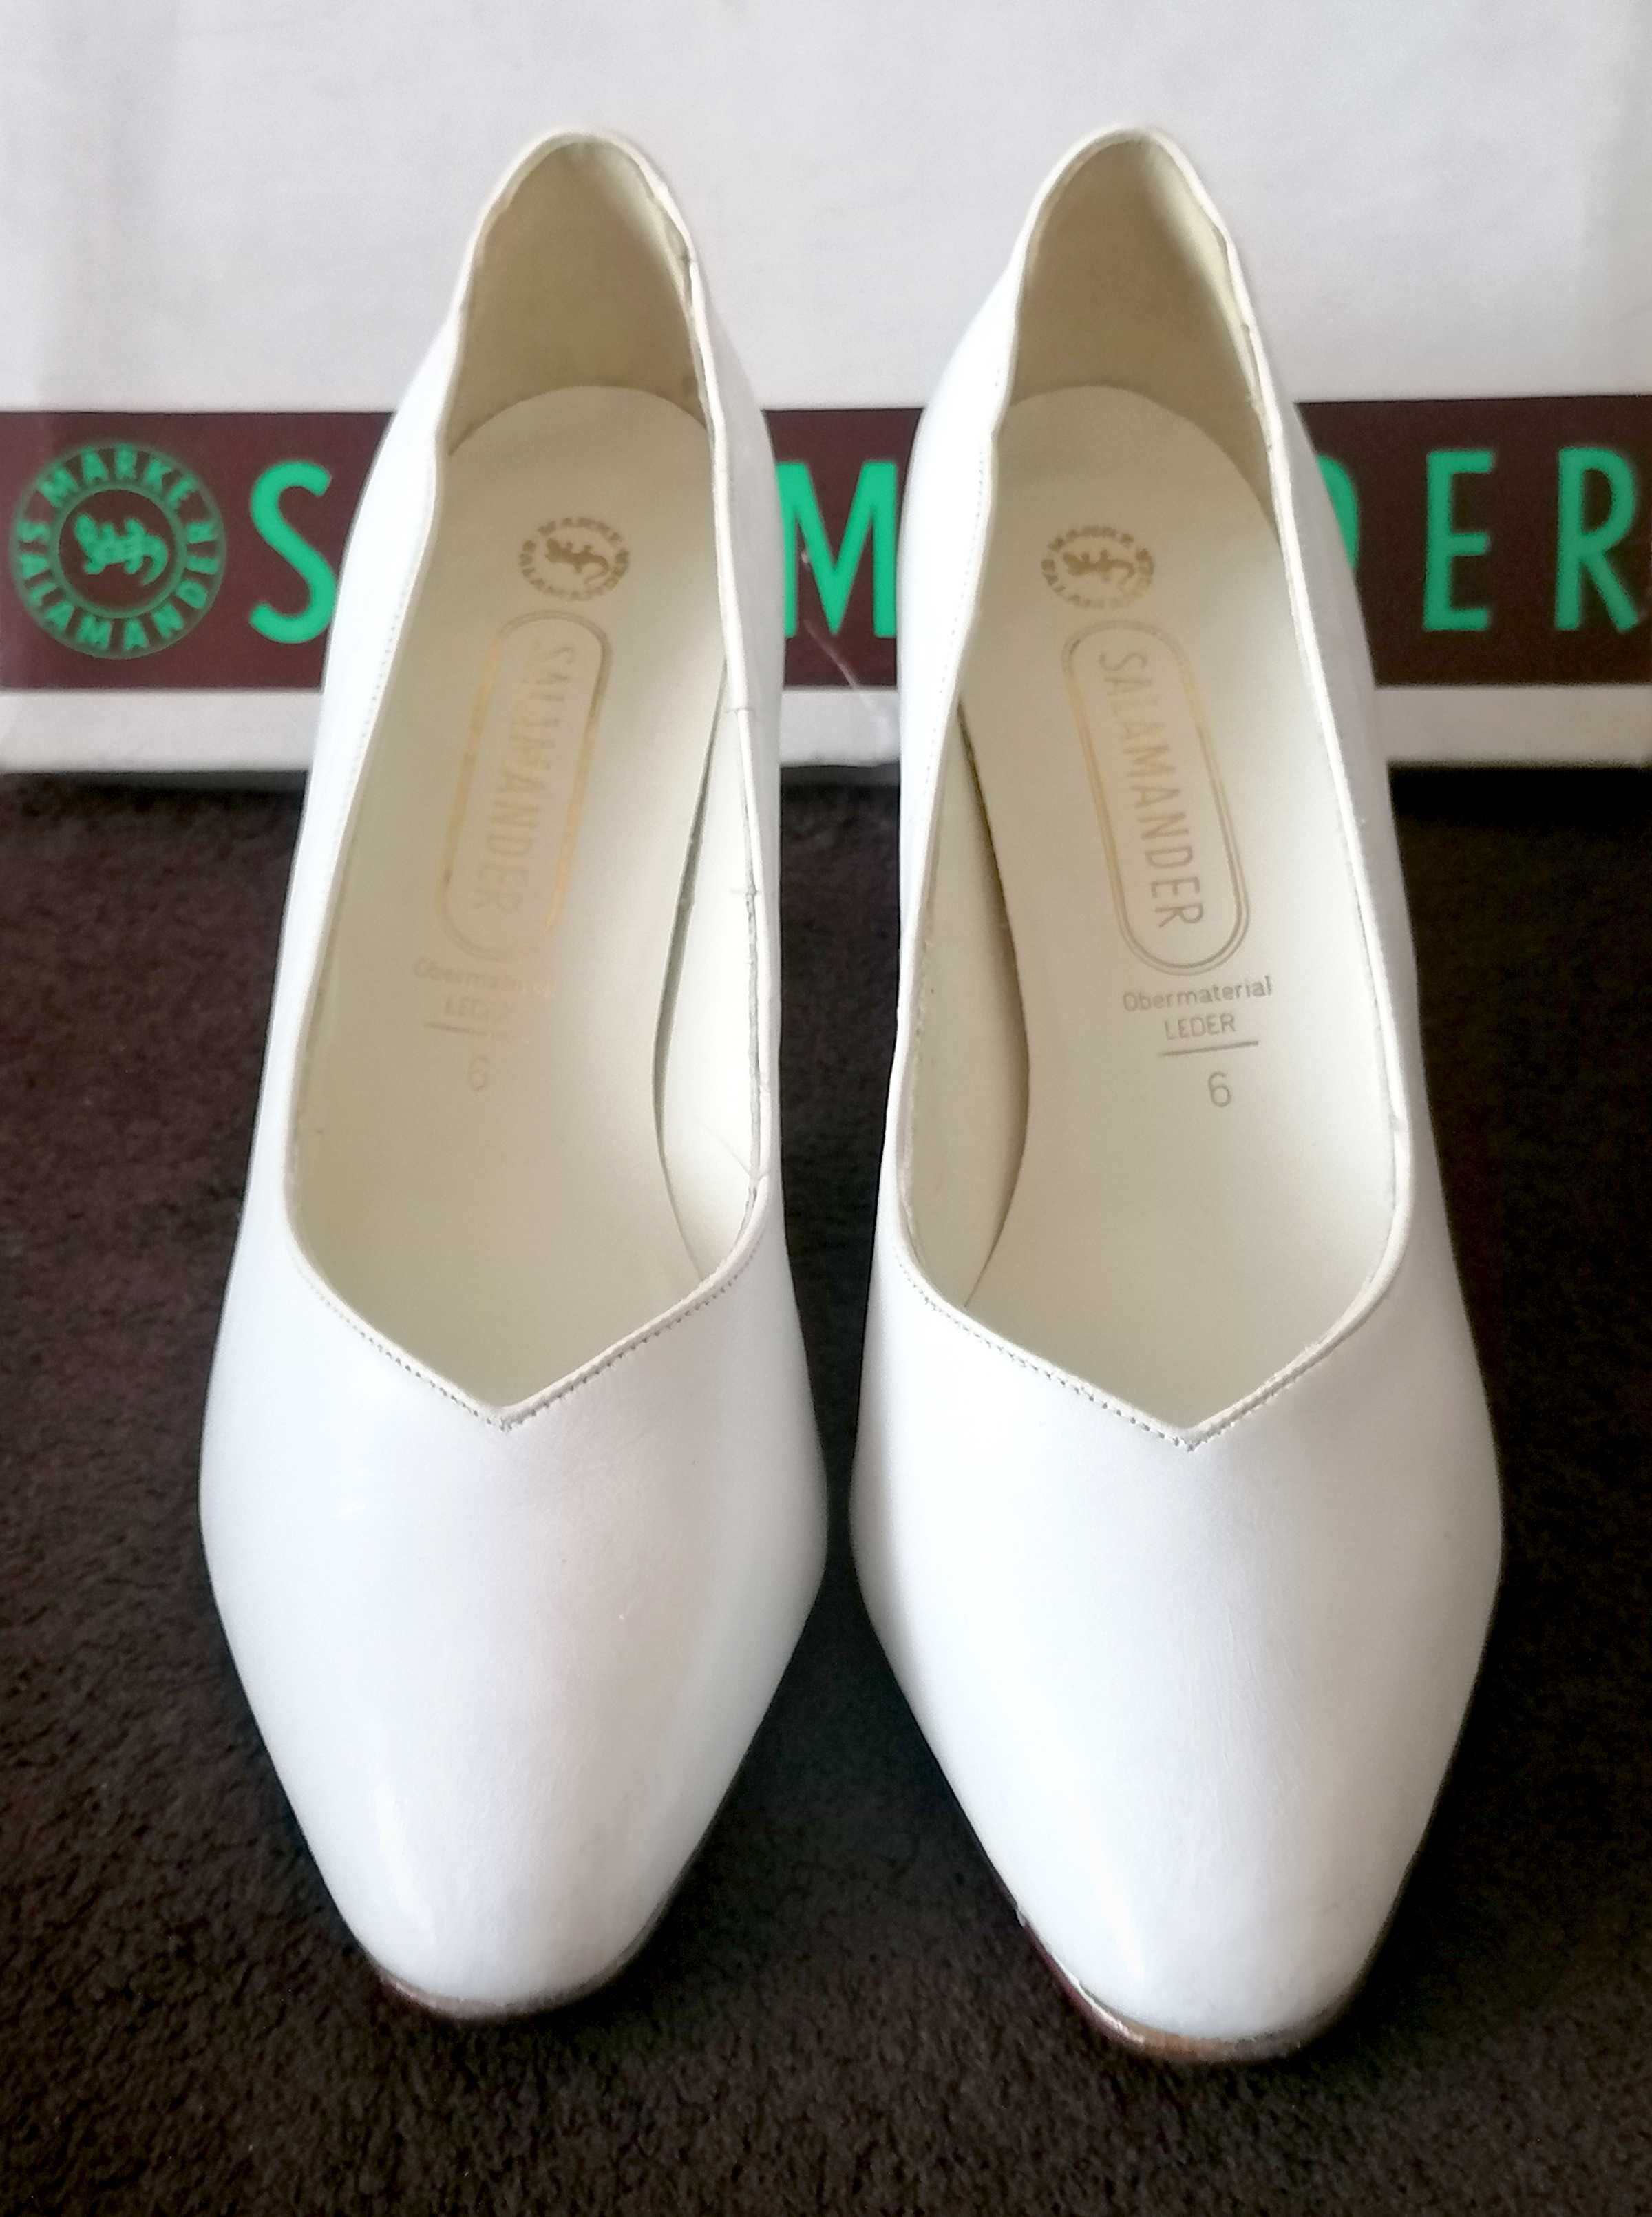 Бели официални кожени обувки Salamander  № 38.5-39, UK 6 - нови